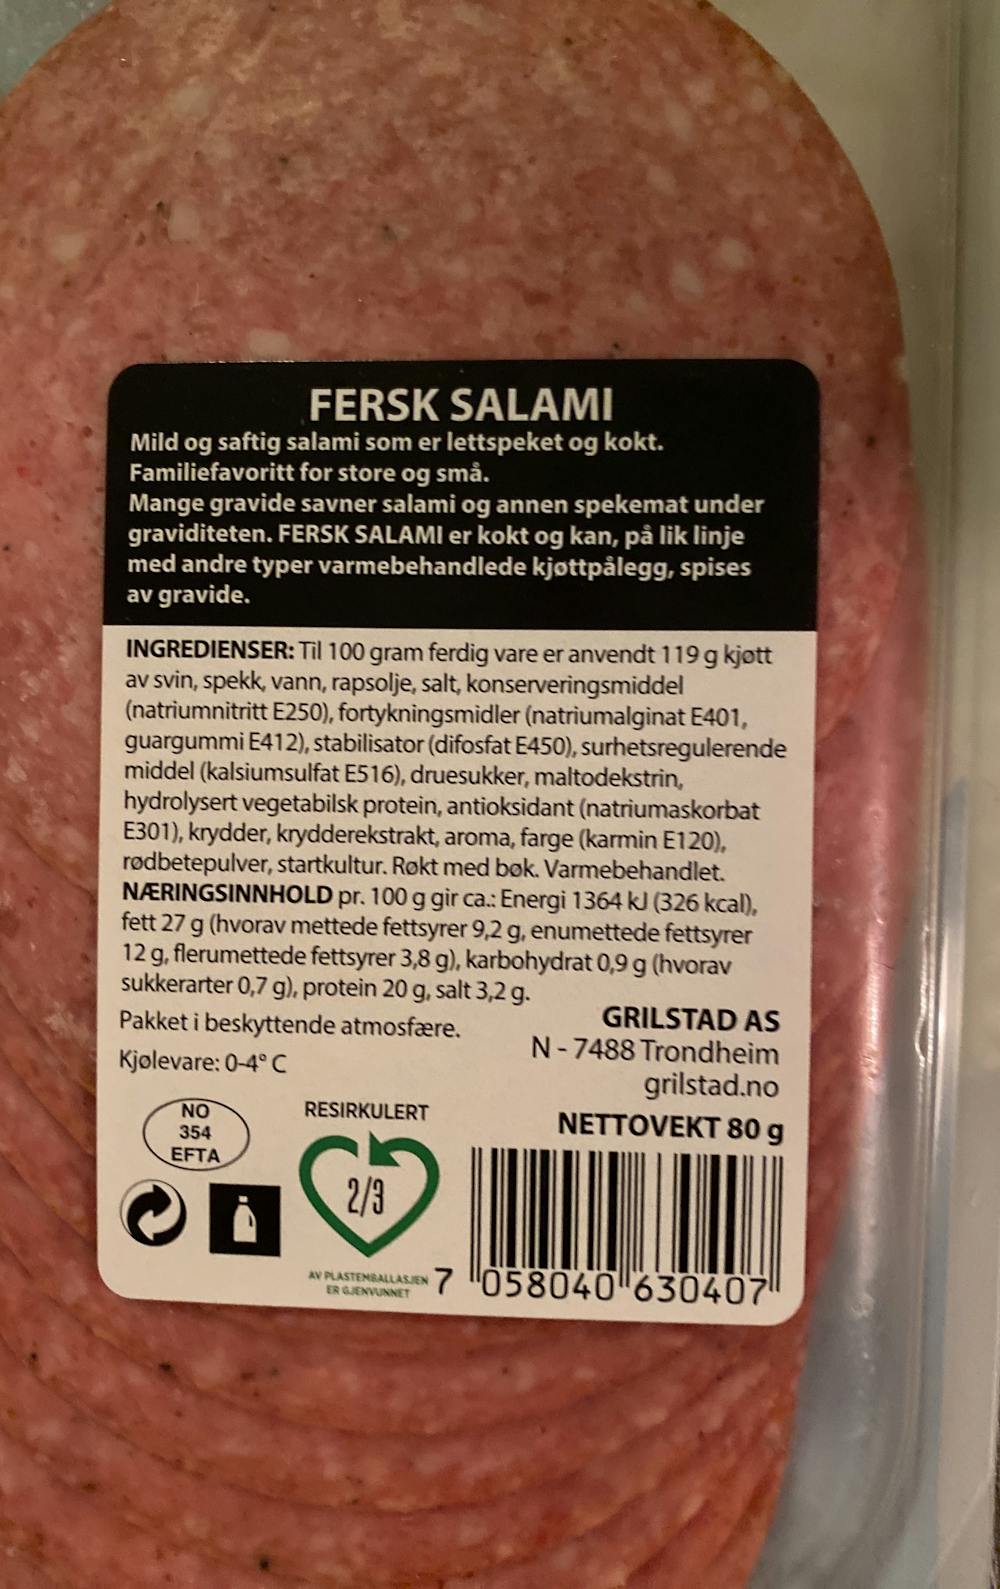 Ingredienslisten til Fersk salami , Grilstad